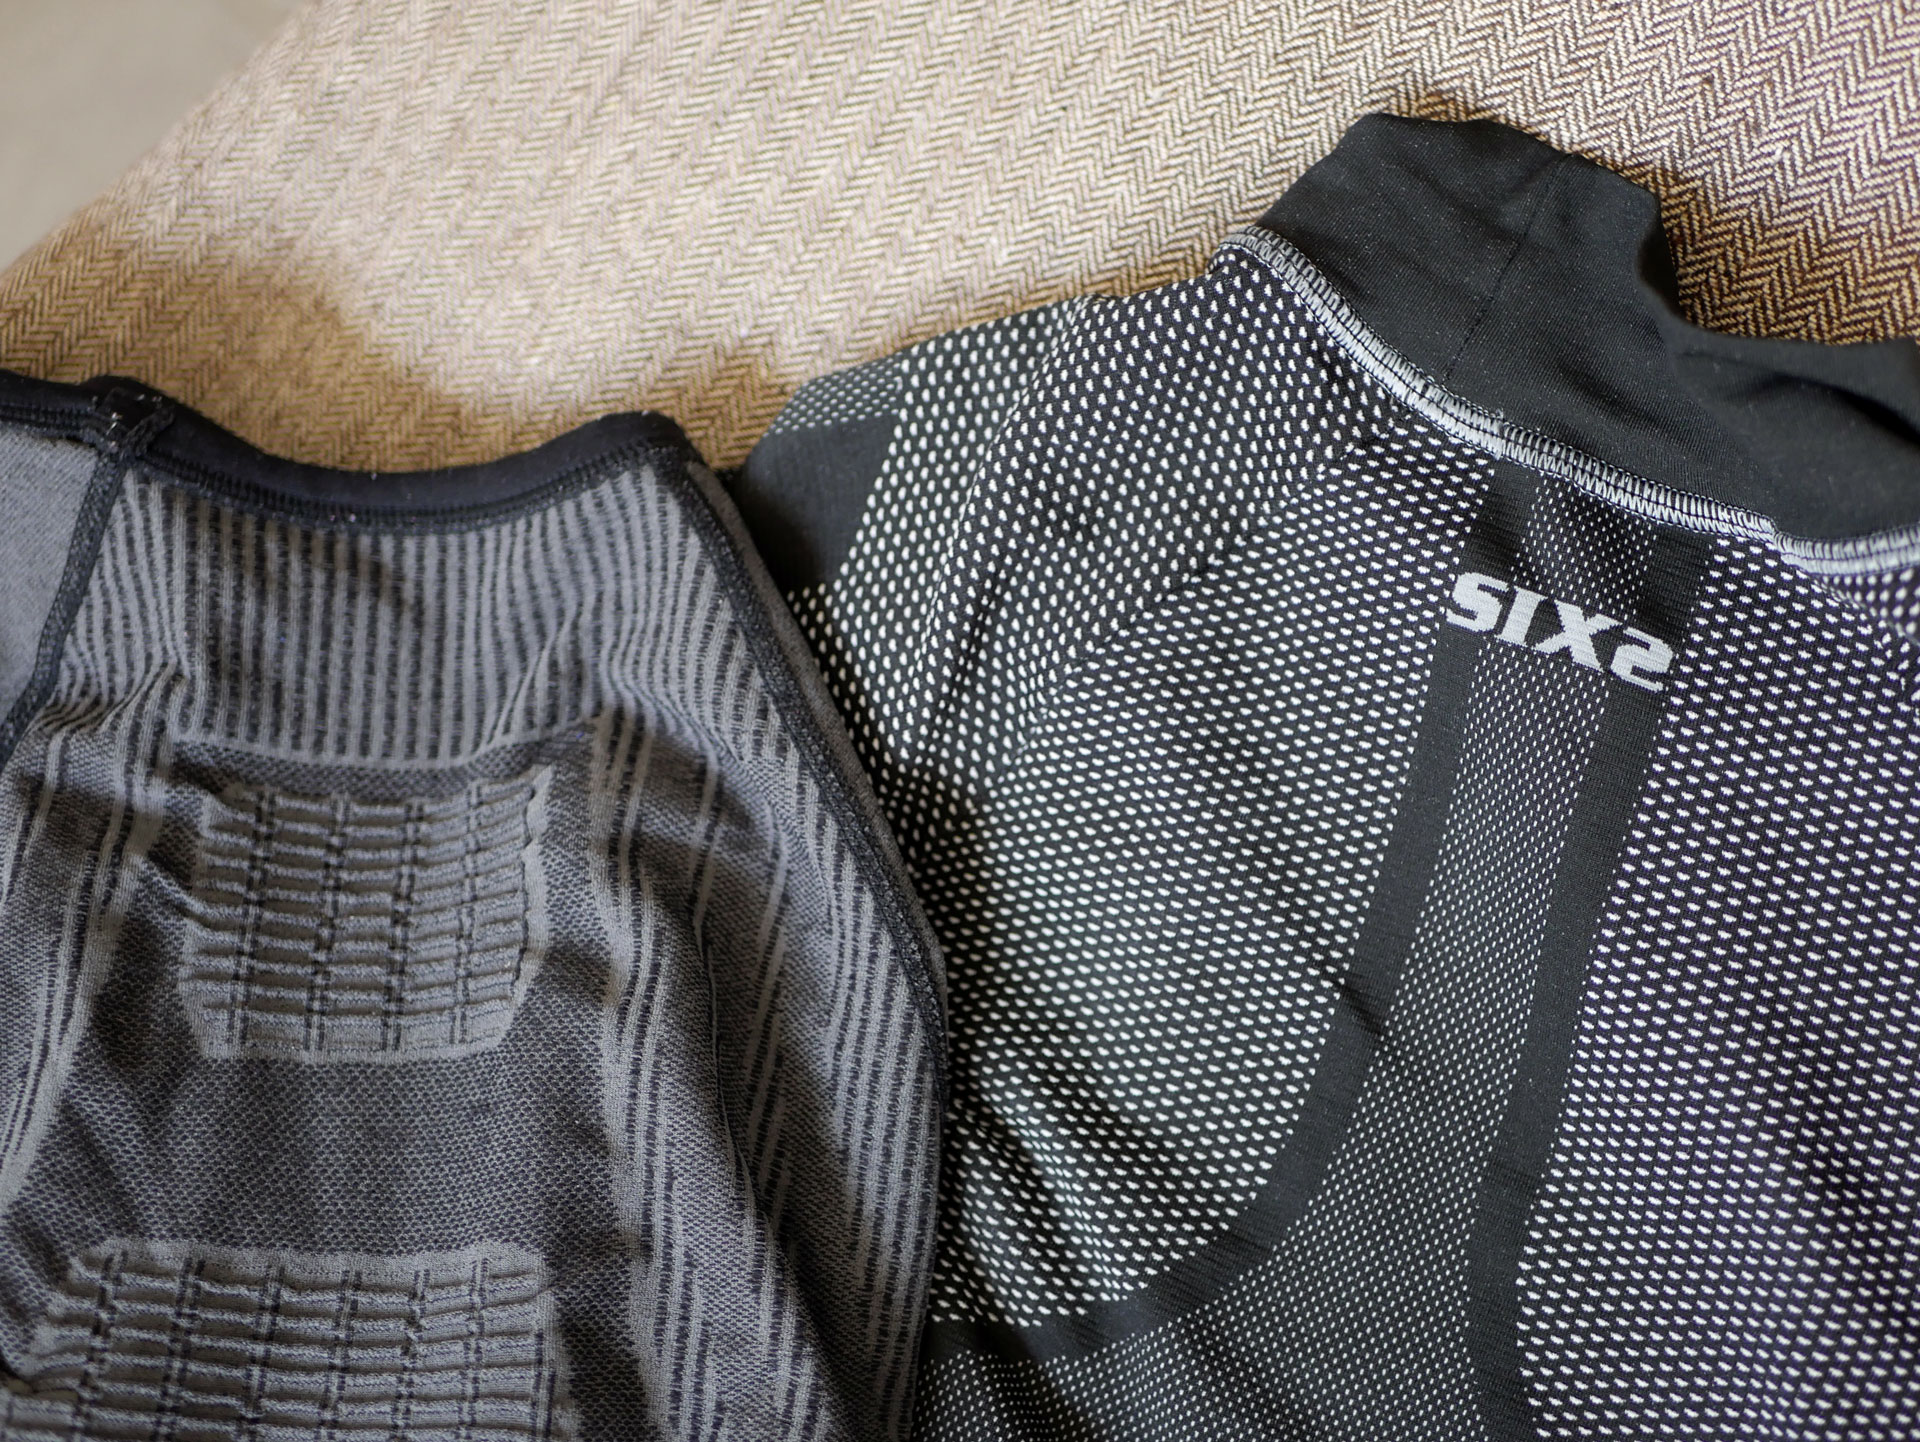 Sous-vêtements thermiques, essai du DXR Warmcore